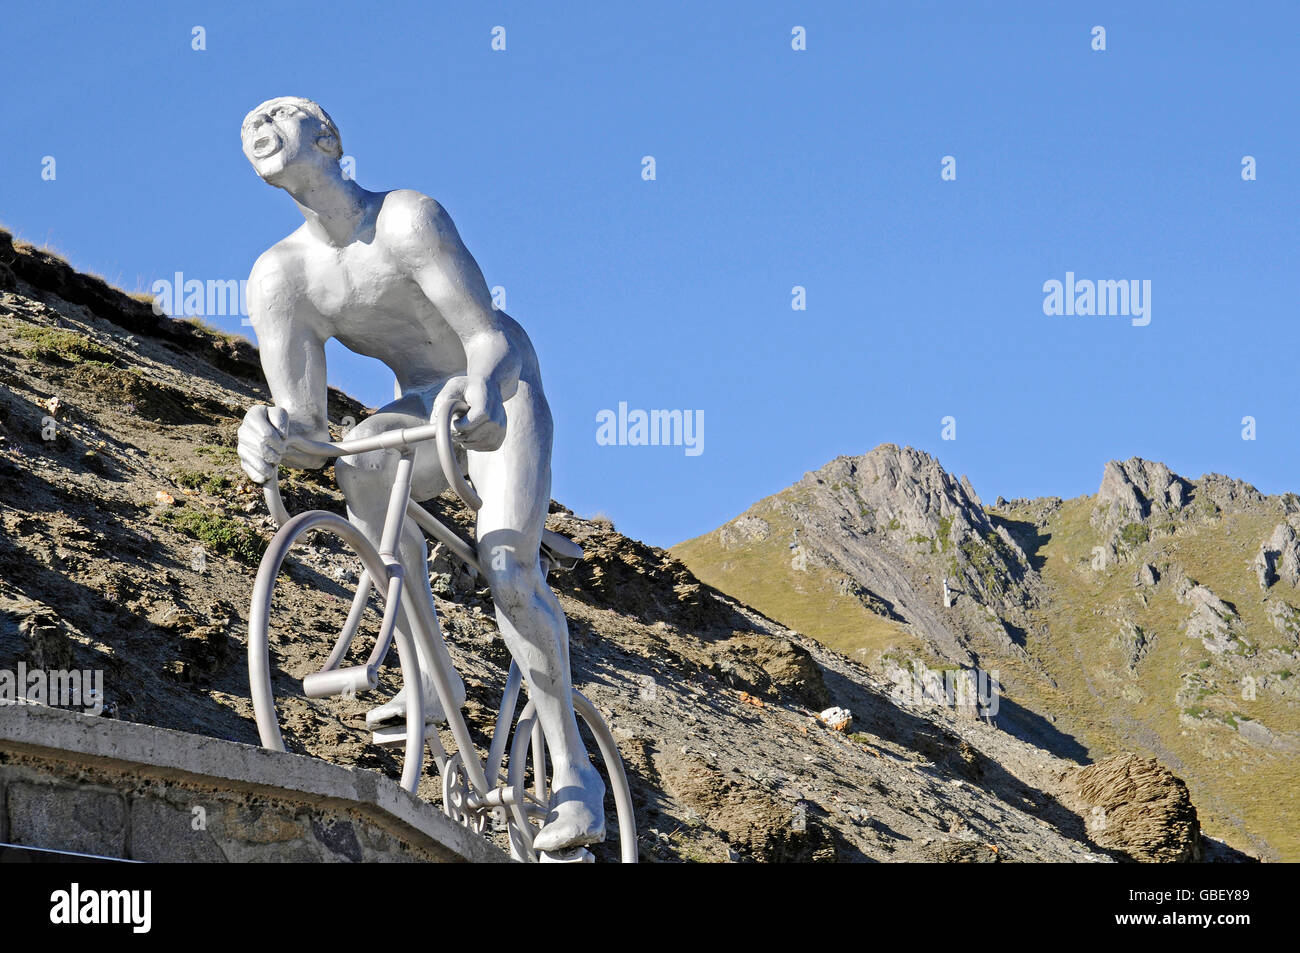 Cyclist sculpture, Tour de France, Col du Tourmalet, mountain pass, Bareges, Midi Pyrenees, Pyrenees, Department Hautes-Pyrenees, France Stock Photo